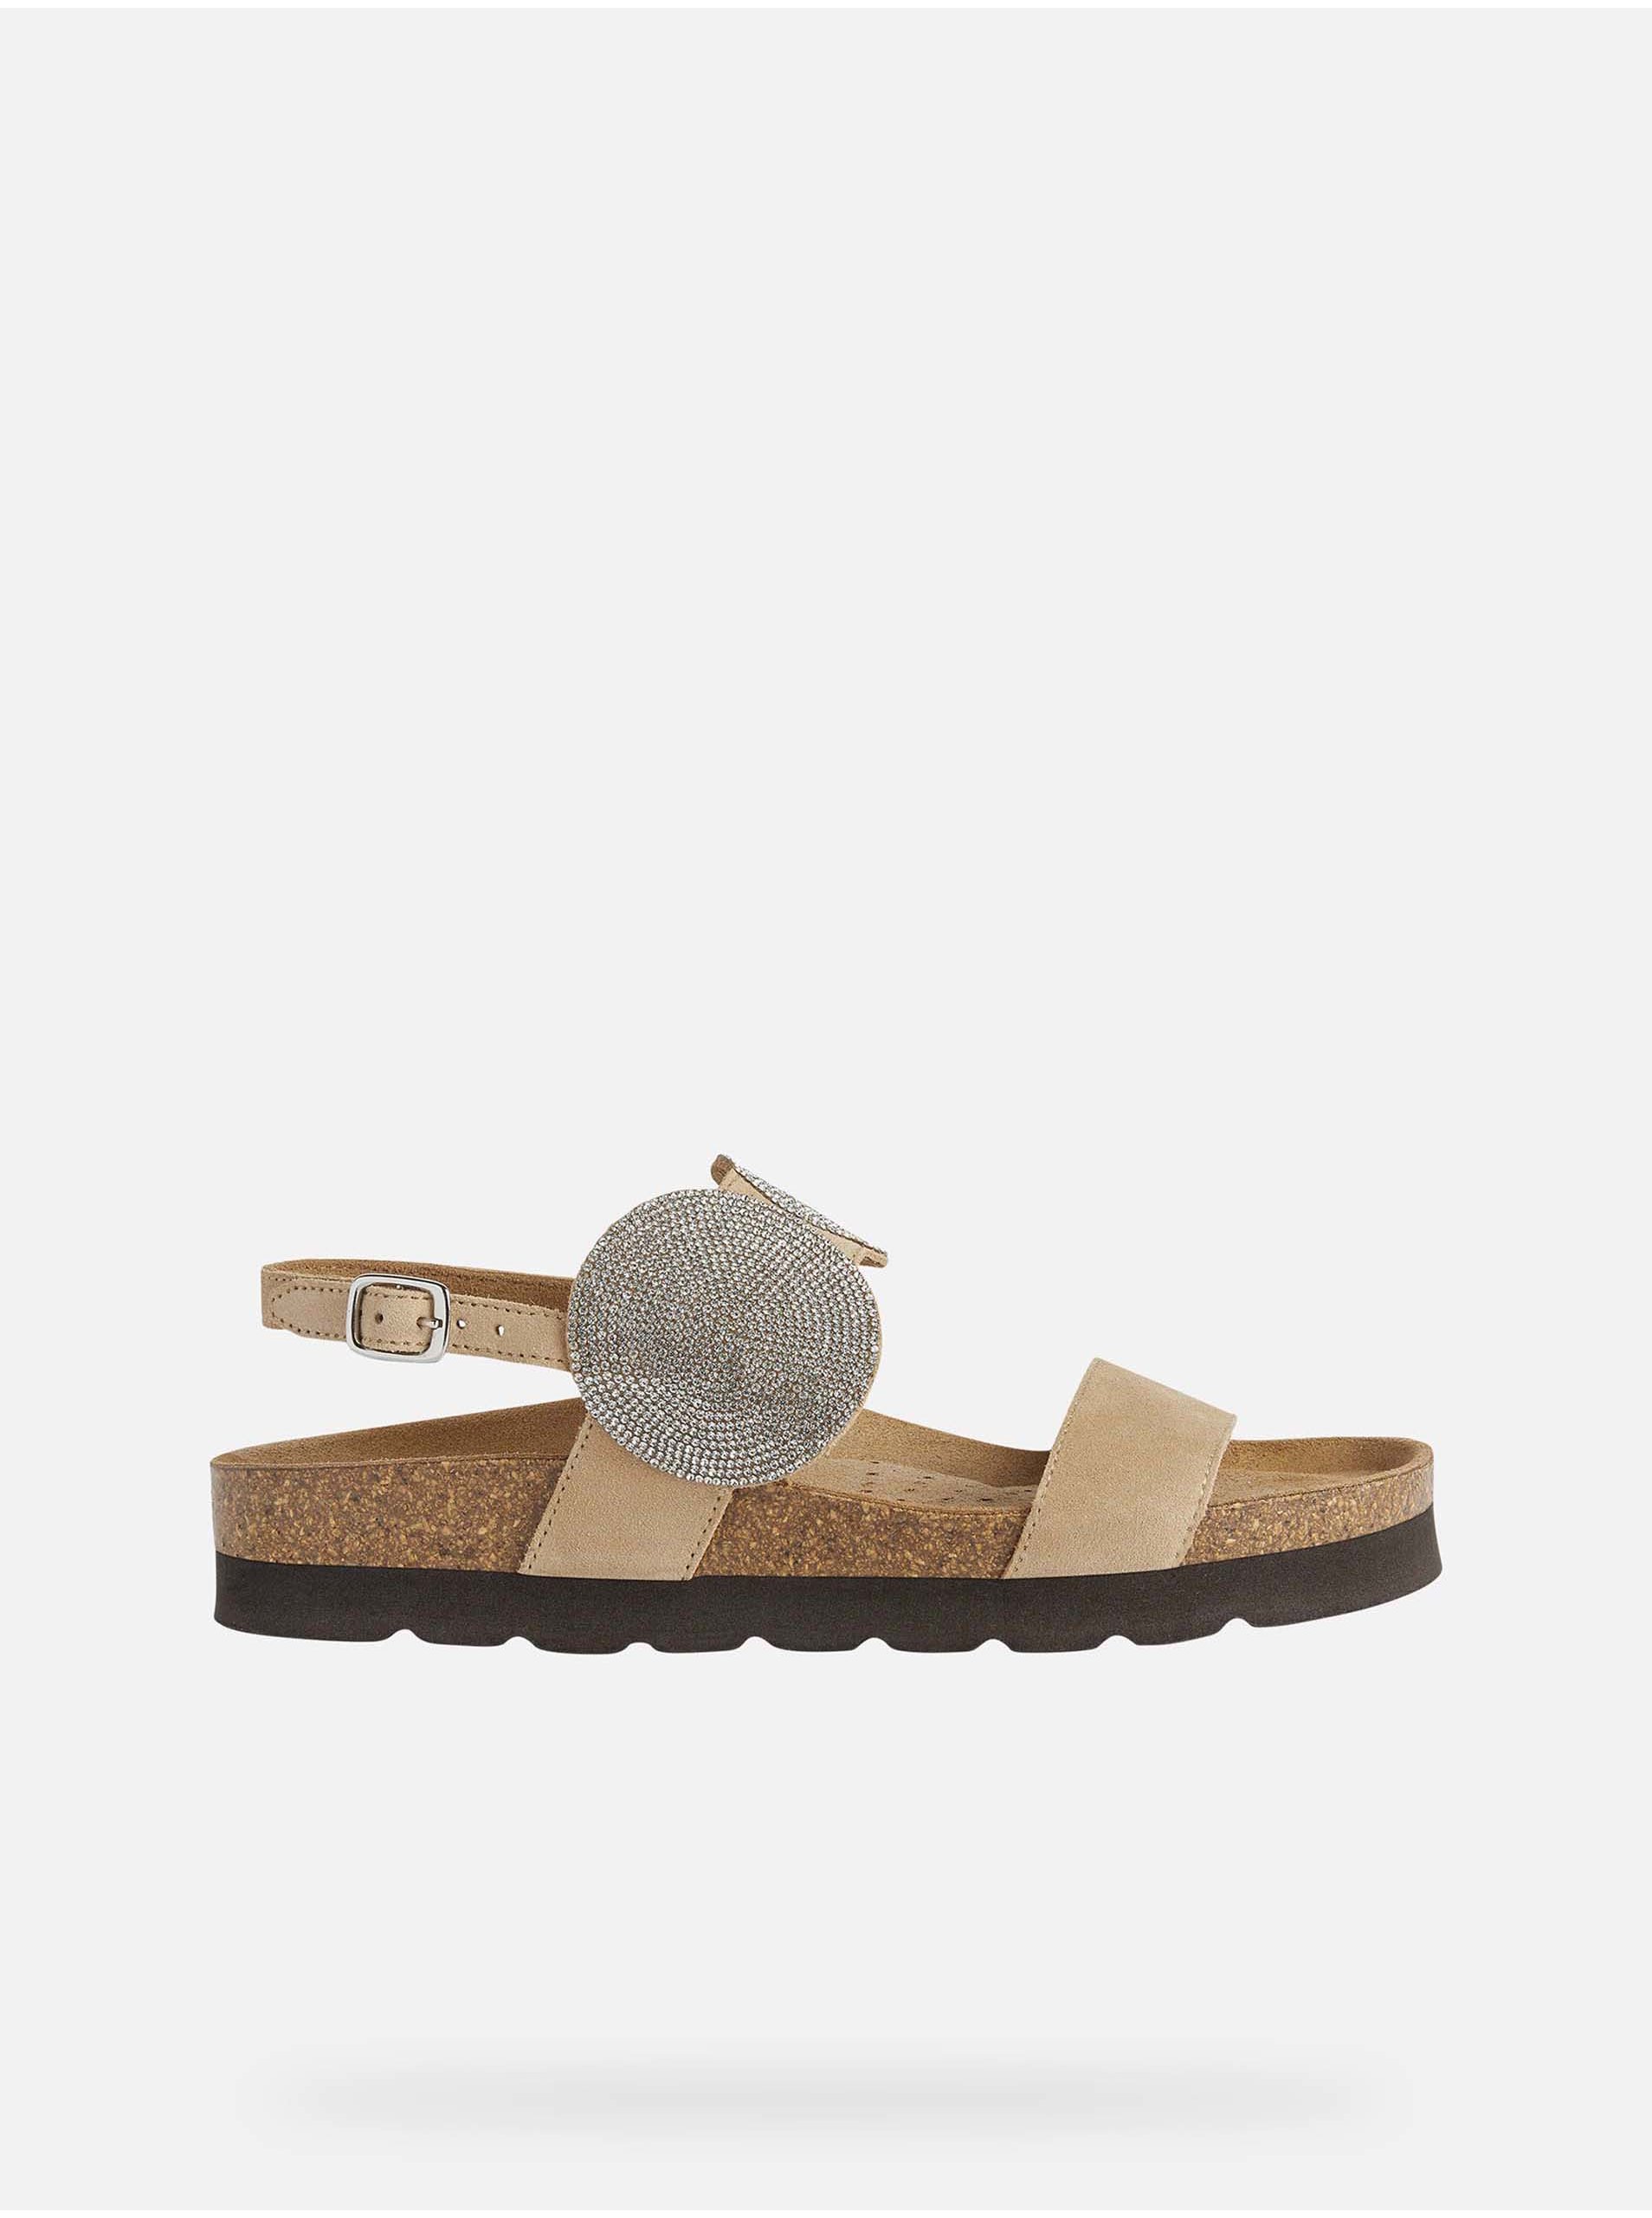 Levně Béžové dámské kožené sandály s ozdobnými detaily Geox Brionia